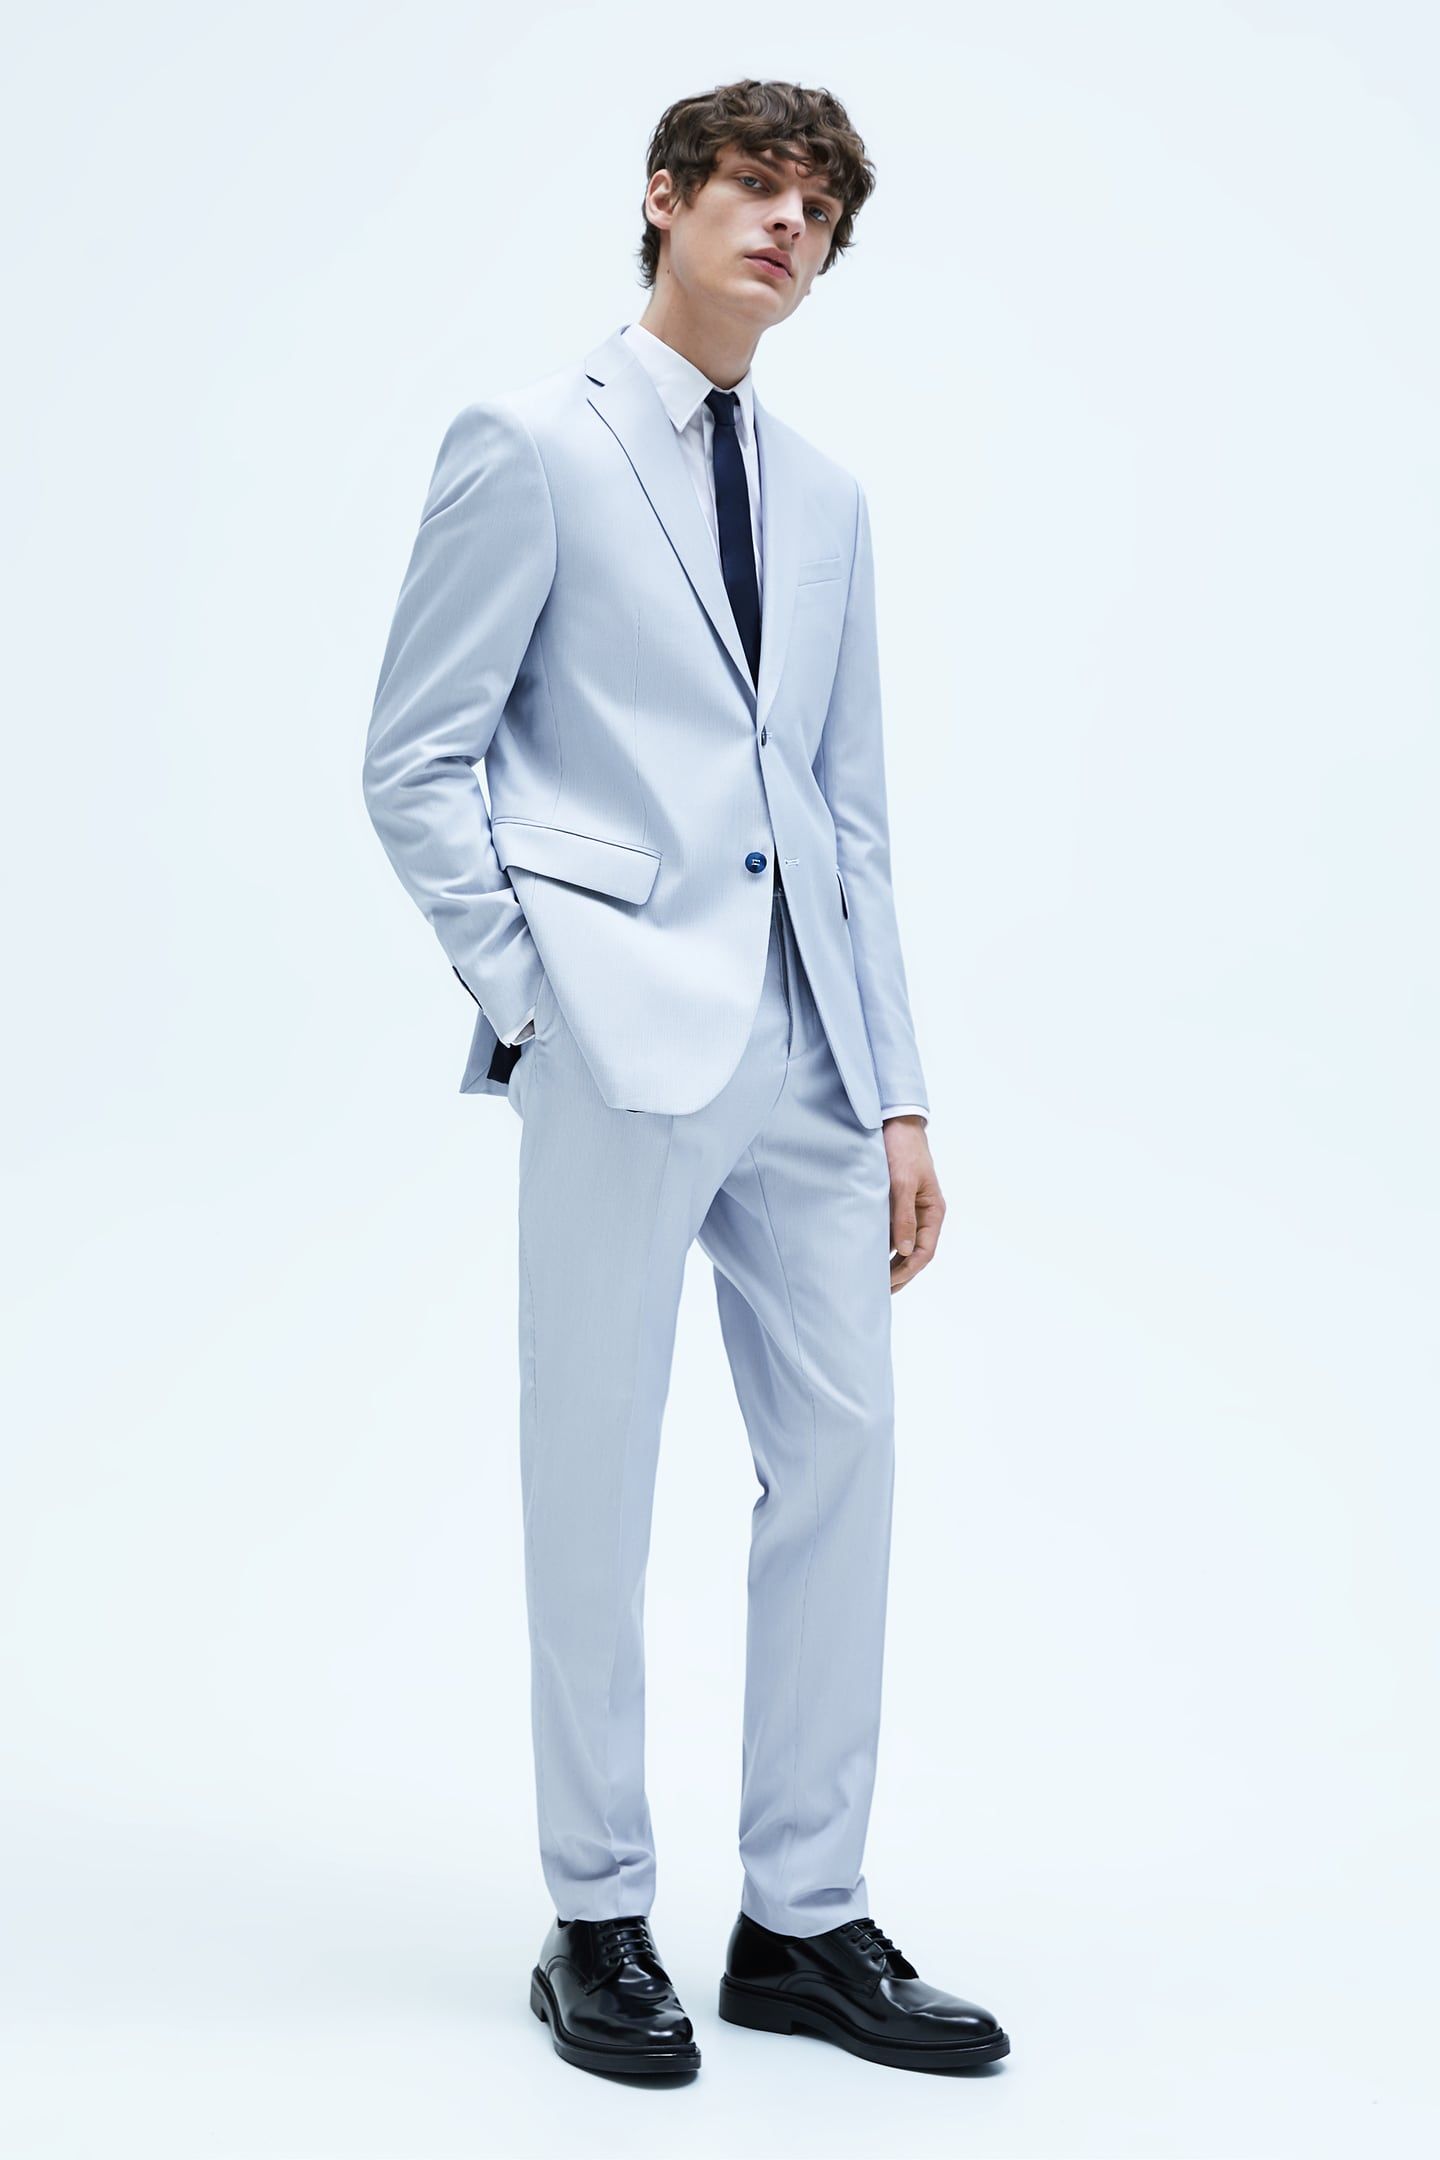 Traje De Boda Para Hombre, Blazer Y Pantalón Azul Claro En Colores Pastel,  Aislado En Foto Premium 